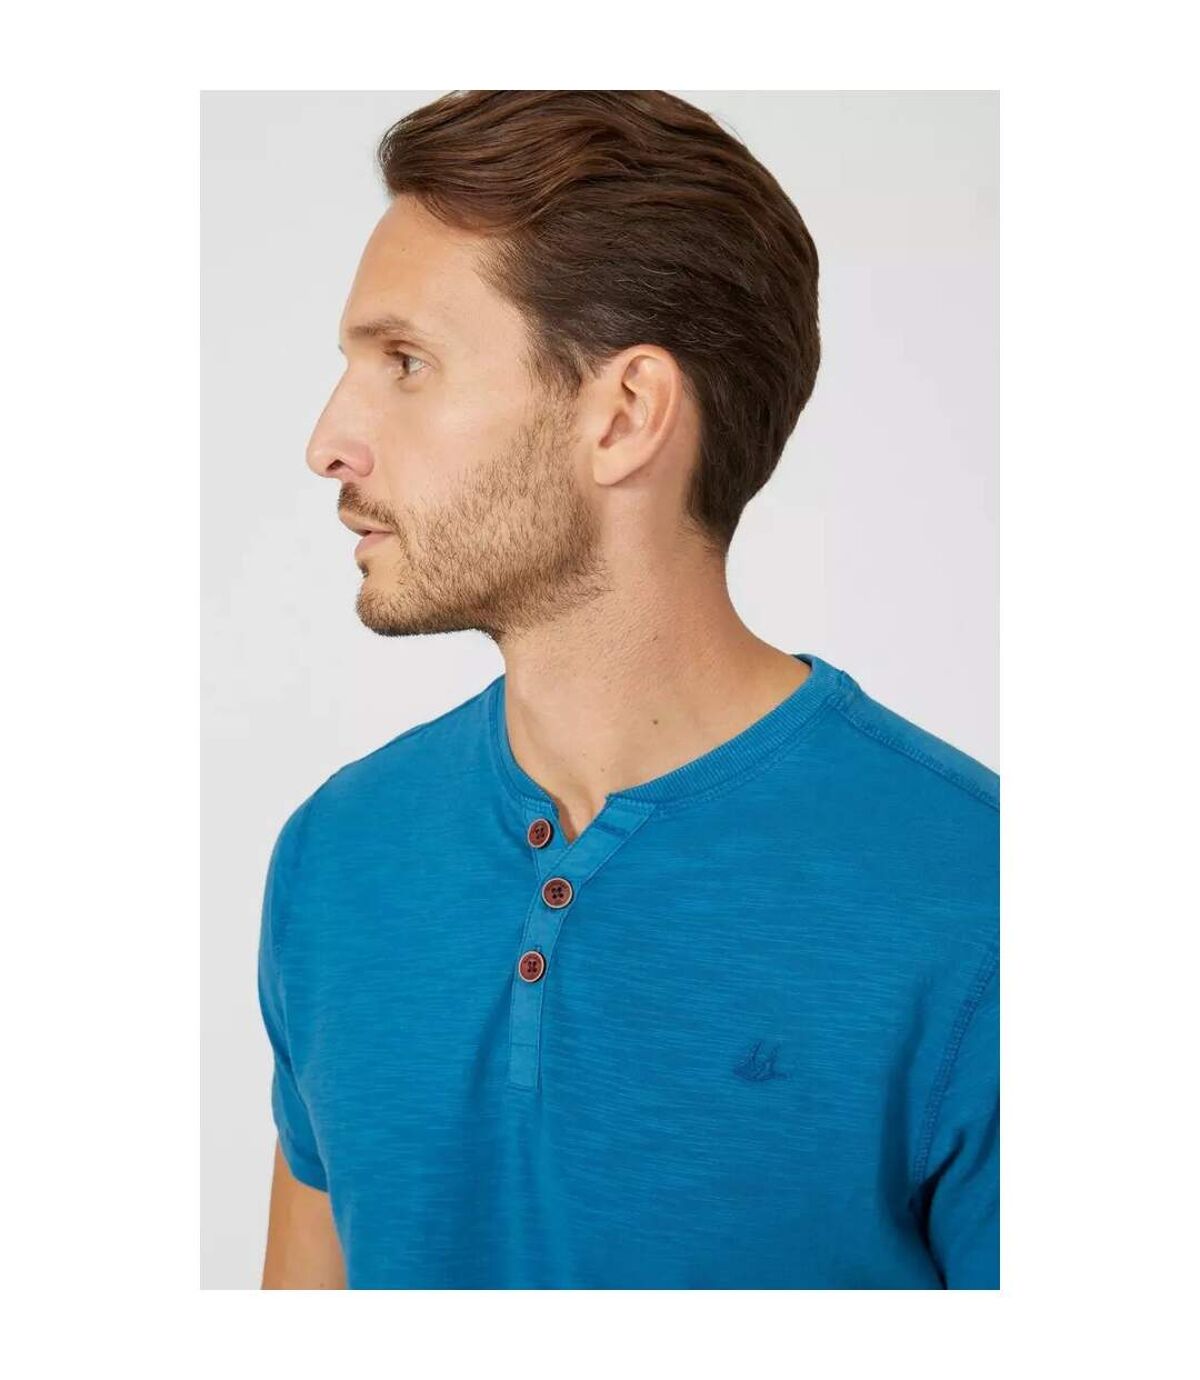 Mantaray - T-shirt SLUB - Homme (Bleu sarcelle foncé) - UTDH227